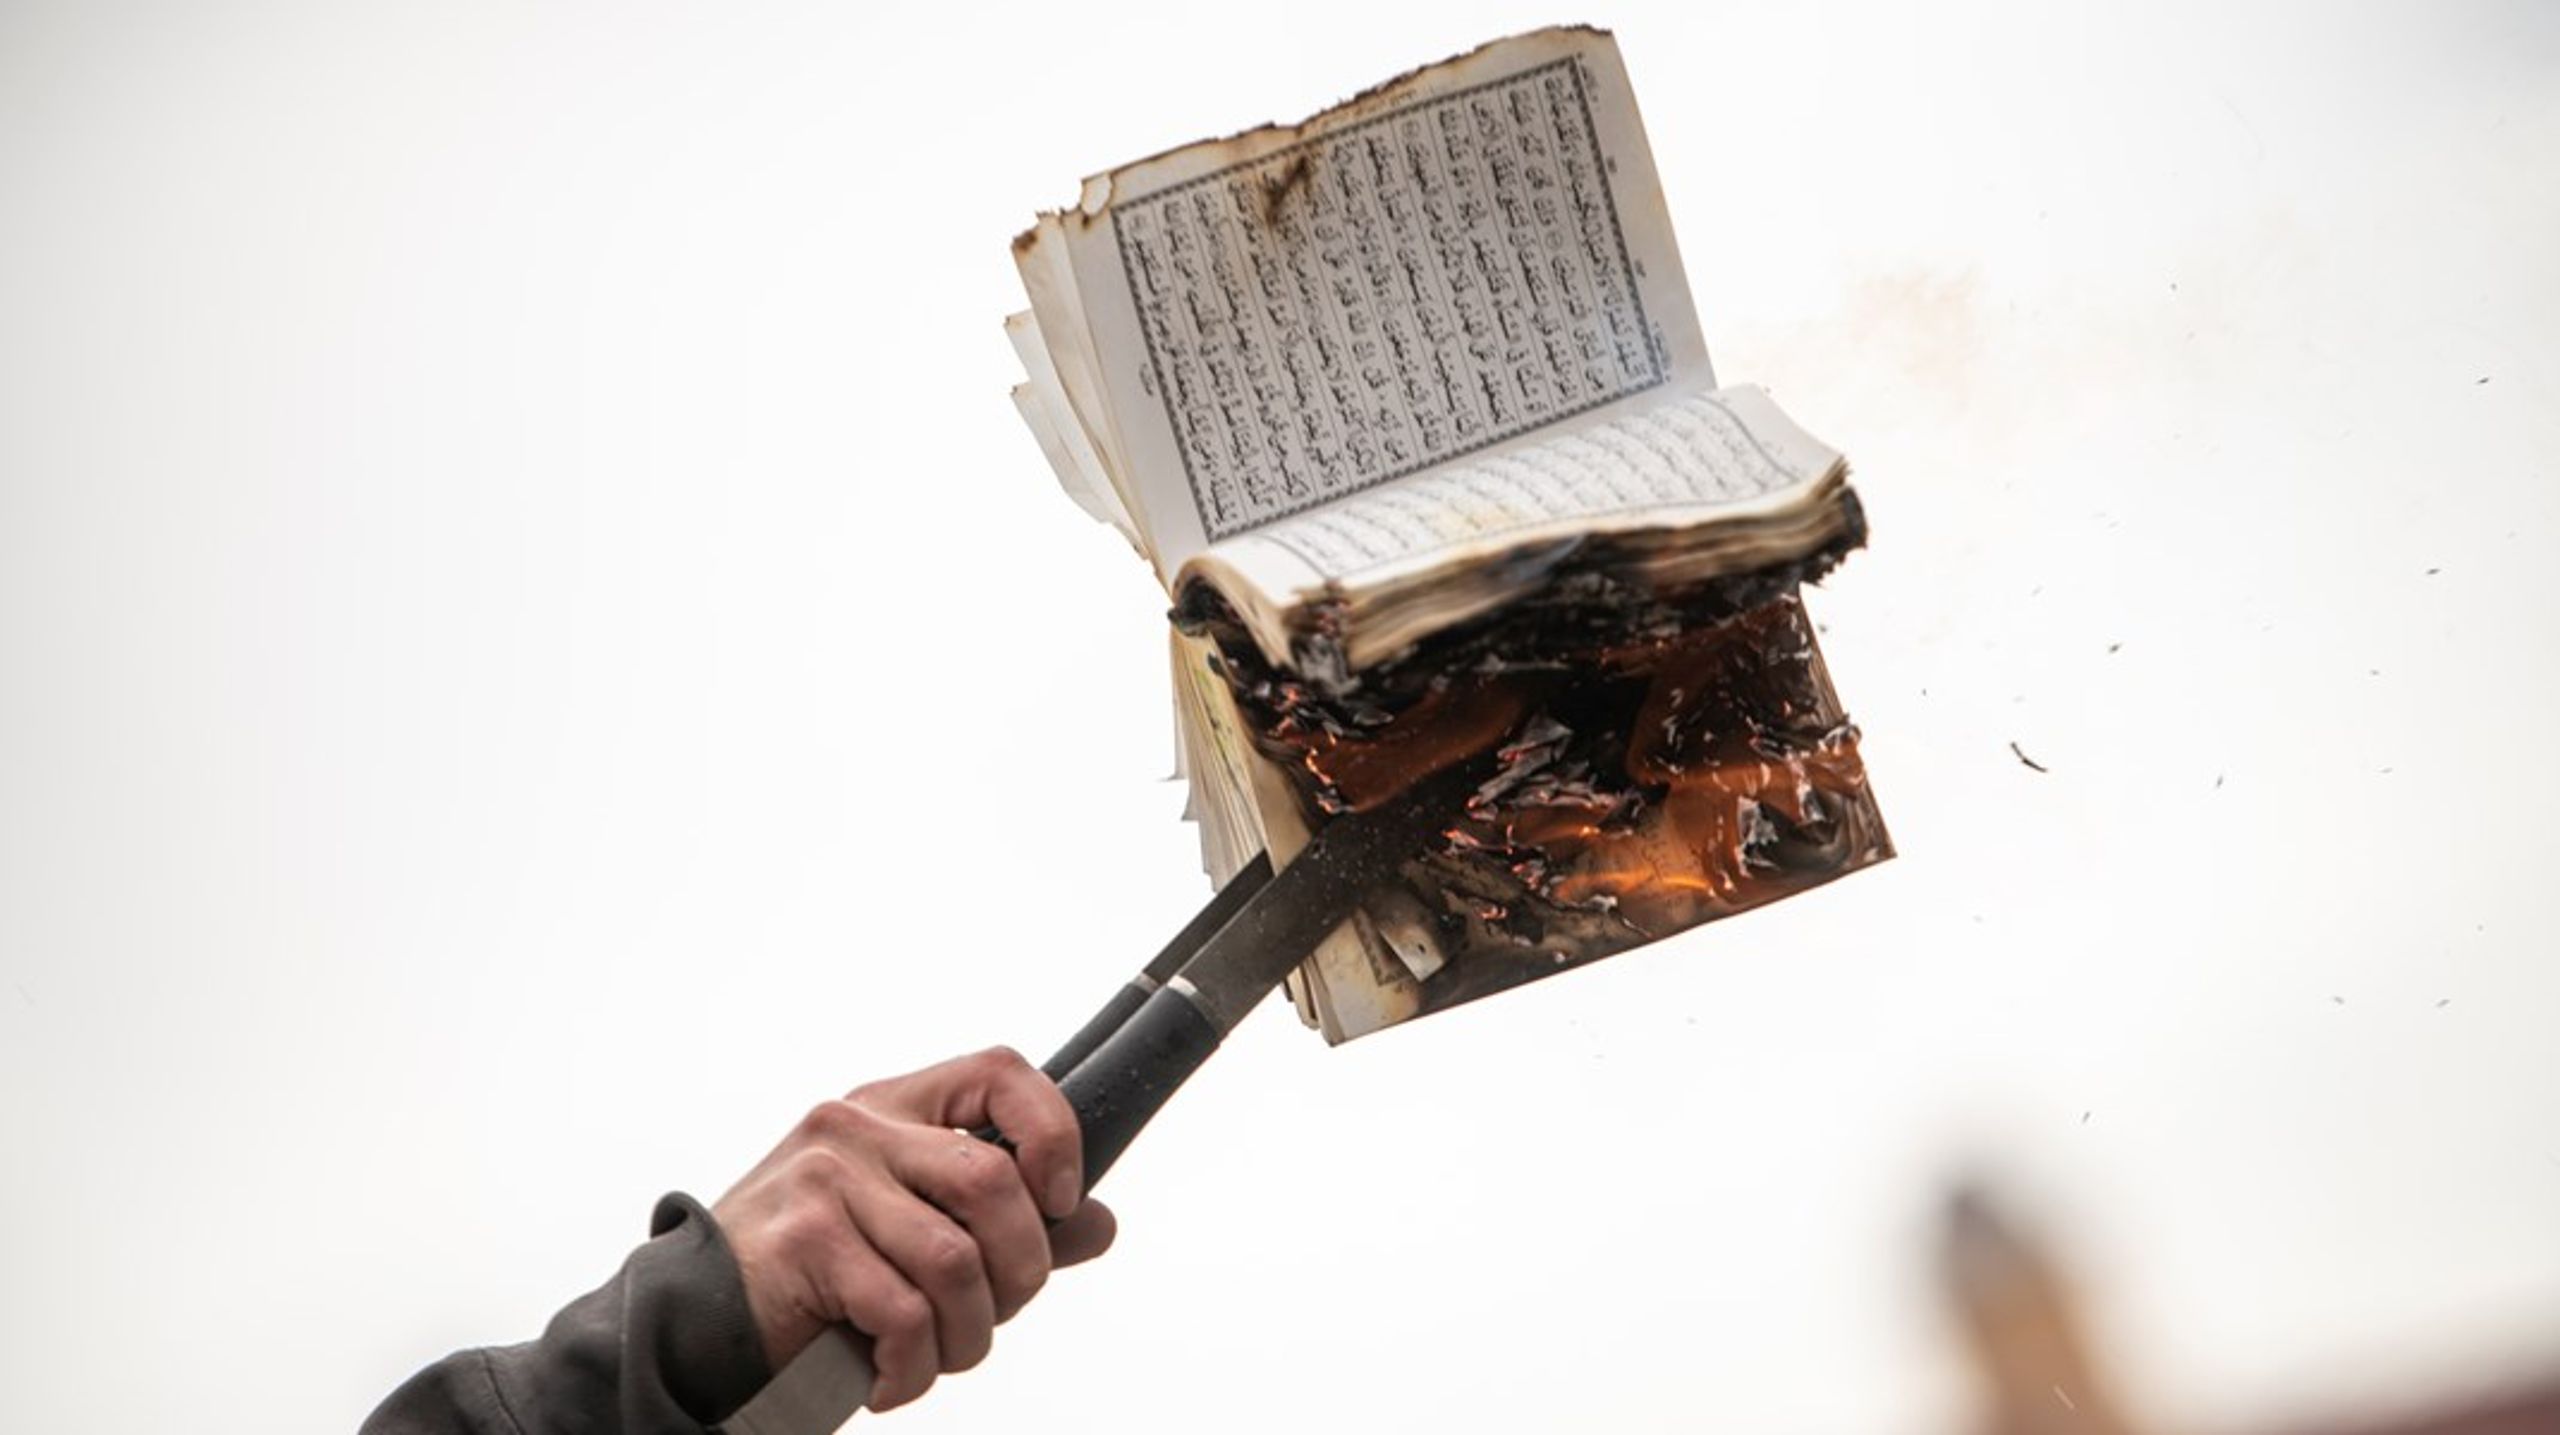 Hvad der frustrerer mig mest ved koranafbrændingerne og disse foredrag om ytringsfriheden betydning er, at det jo for fanden (undskyld!) er helt ligegyldigt, skriver&nbsp;David Sausdal.